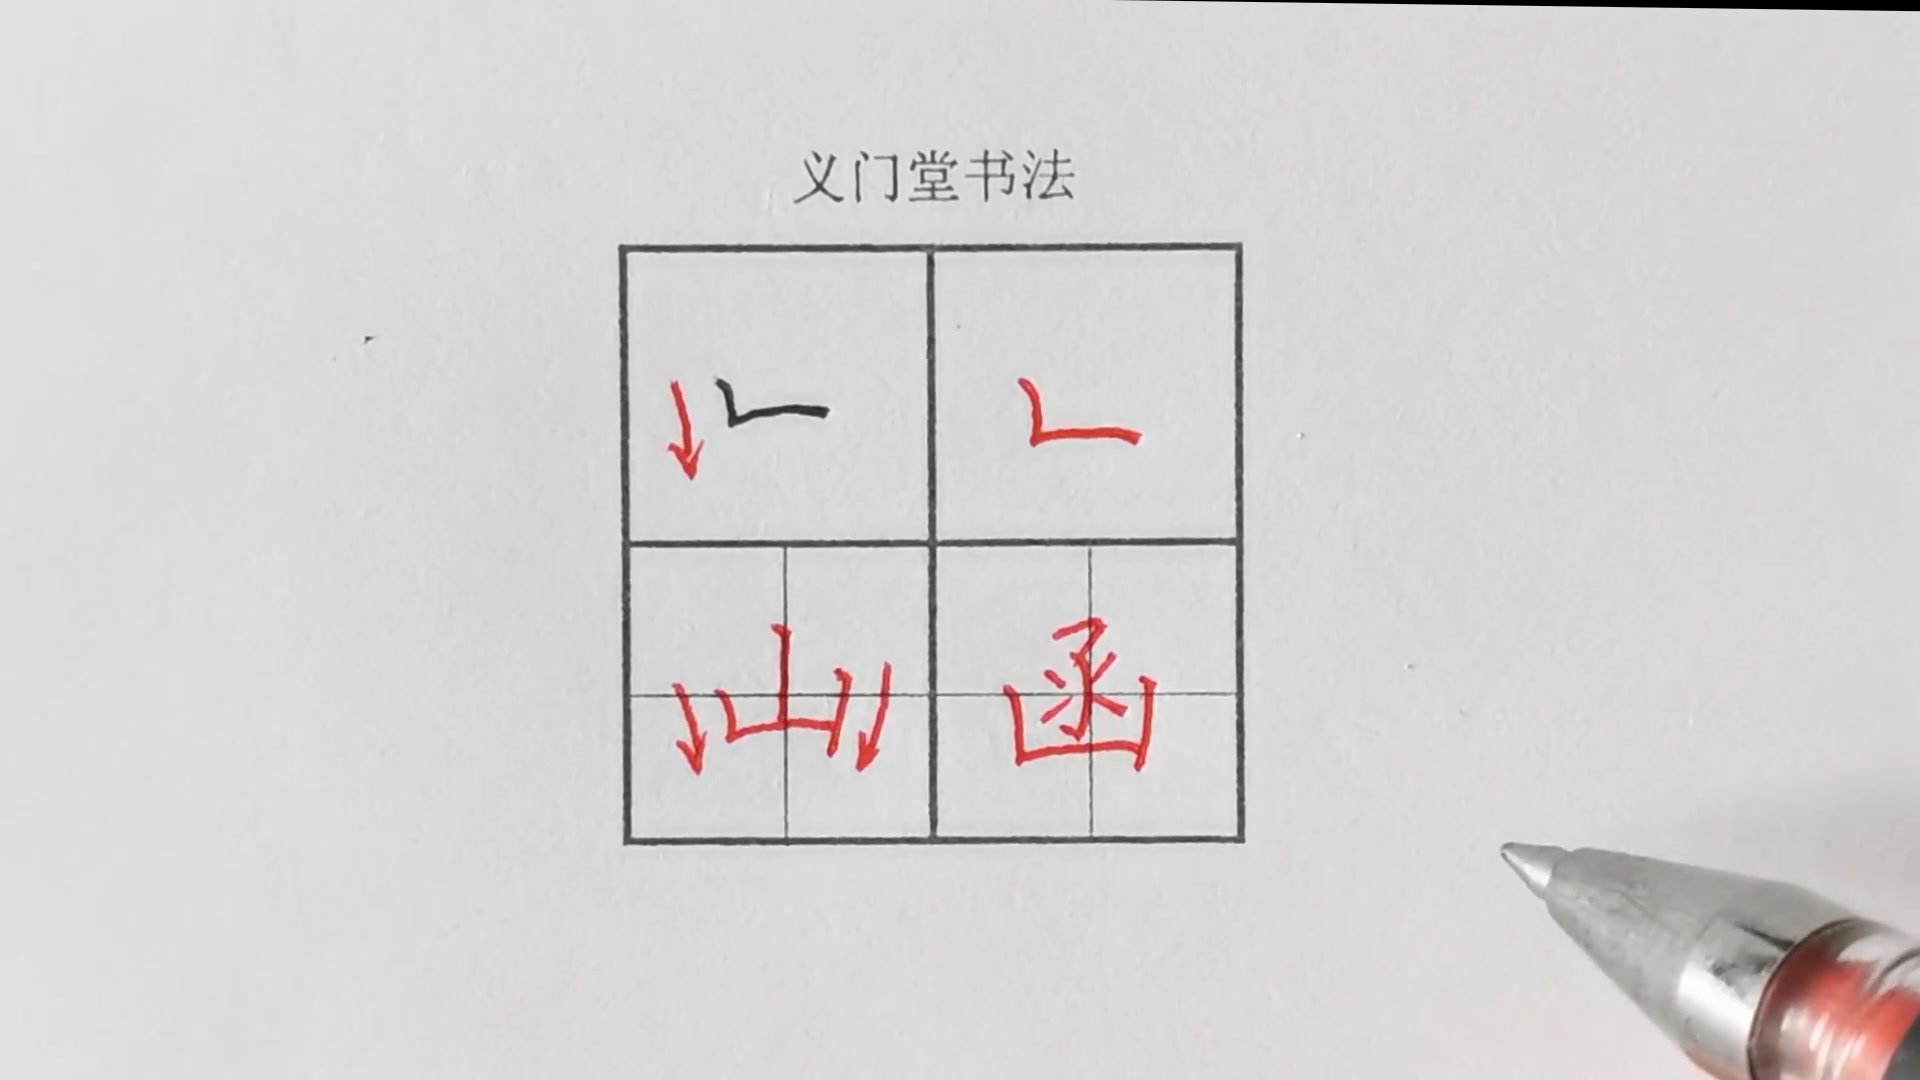 【练字视频】硬笔书法写字教程:楷书基本笔画